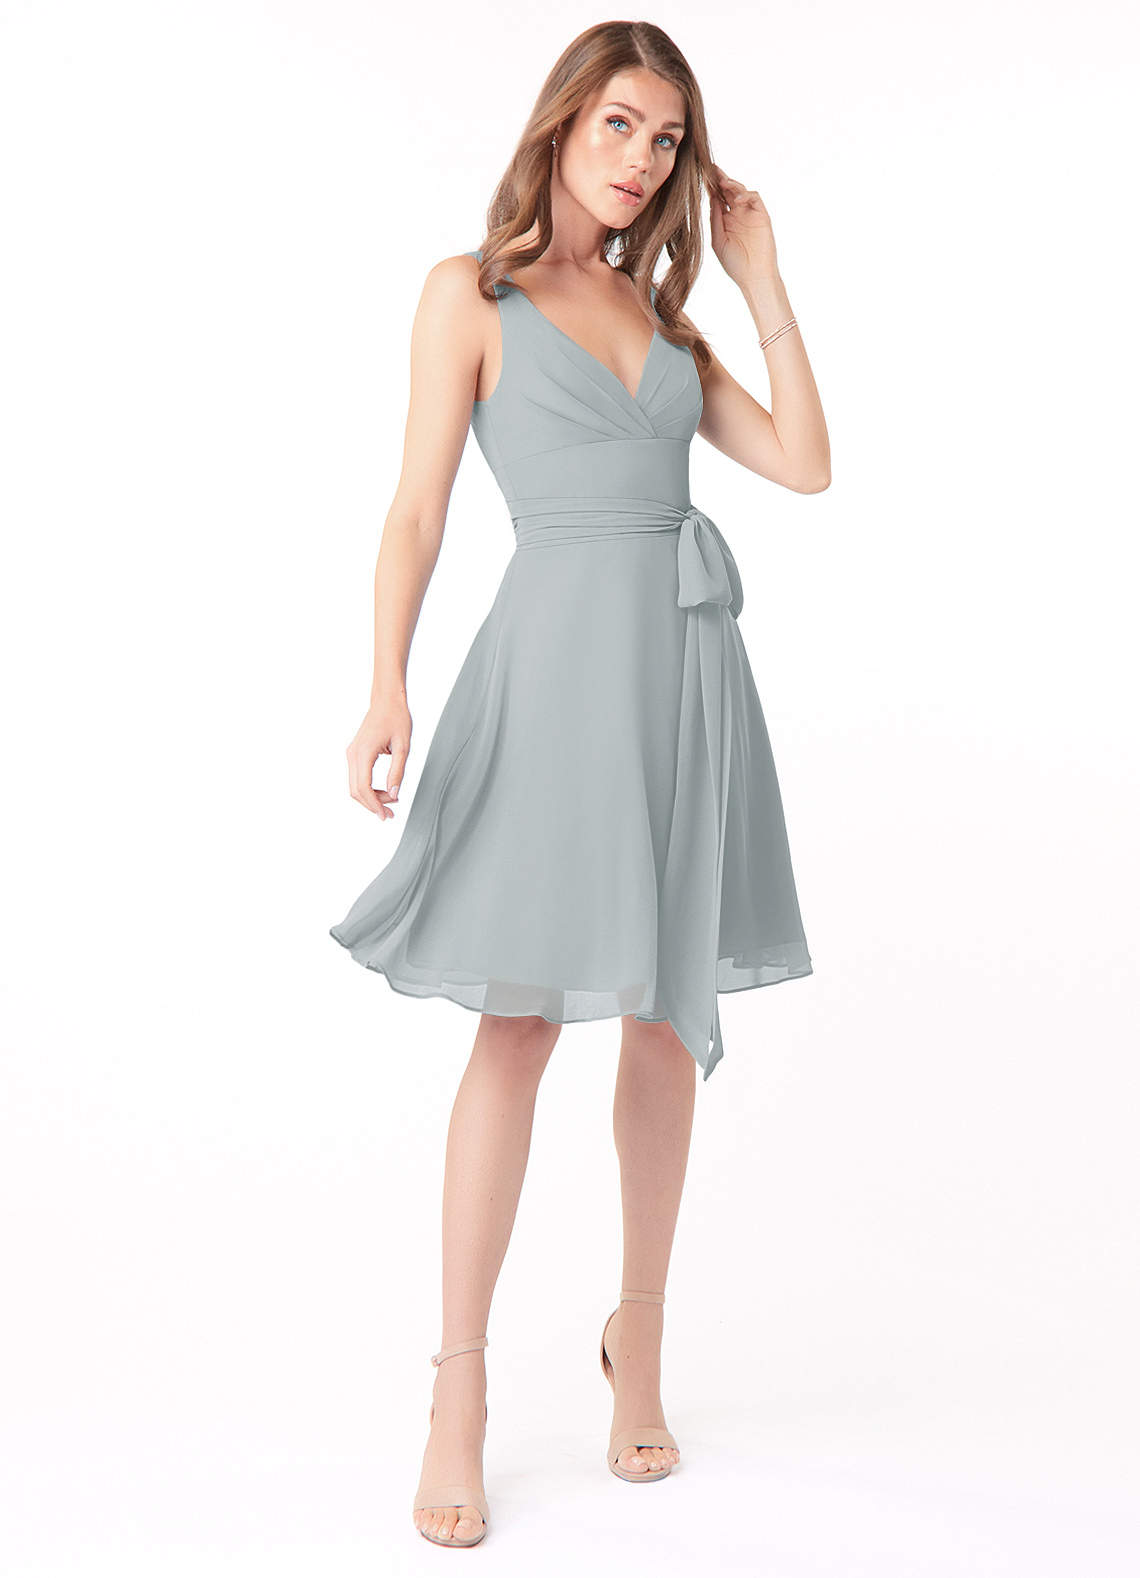 Azazie Diana Bridesmaid Dresses A-Line Pleated Chiffon Knee-Length Dress image1